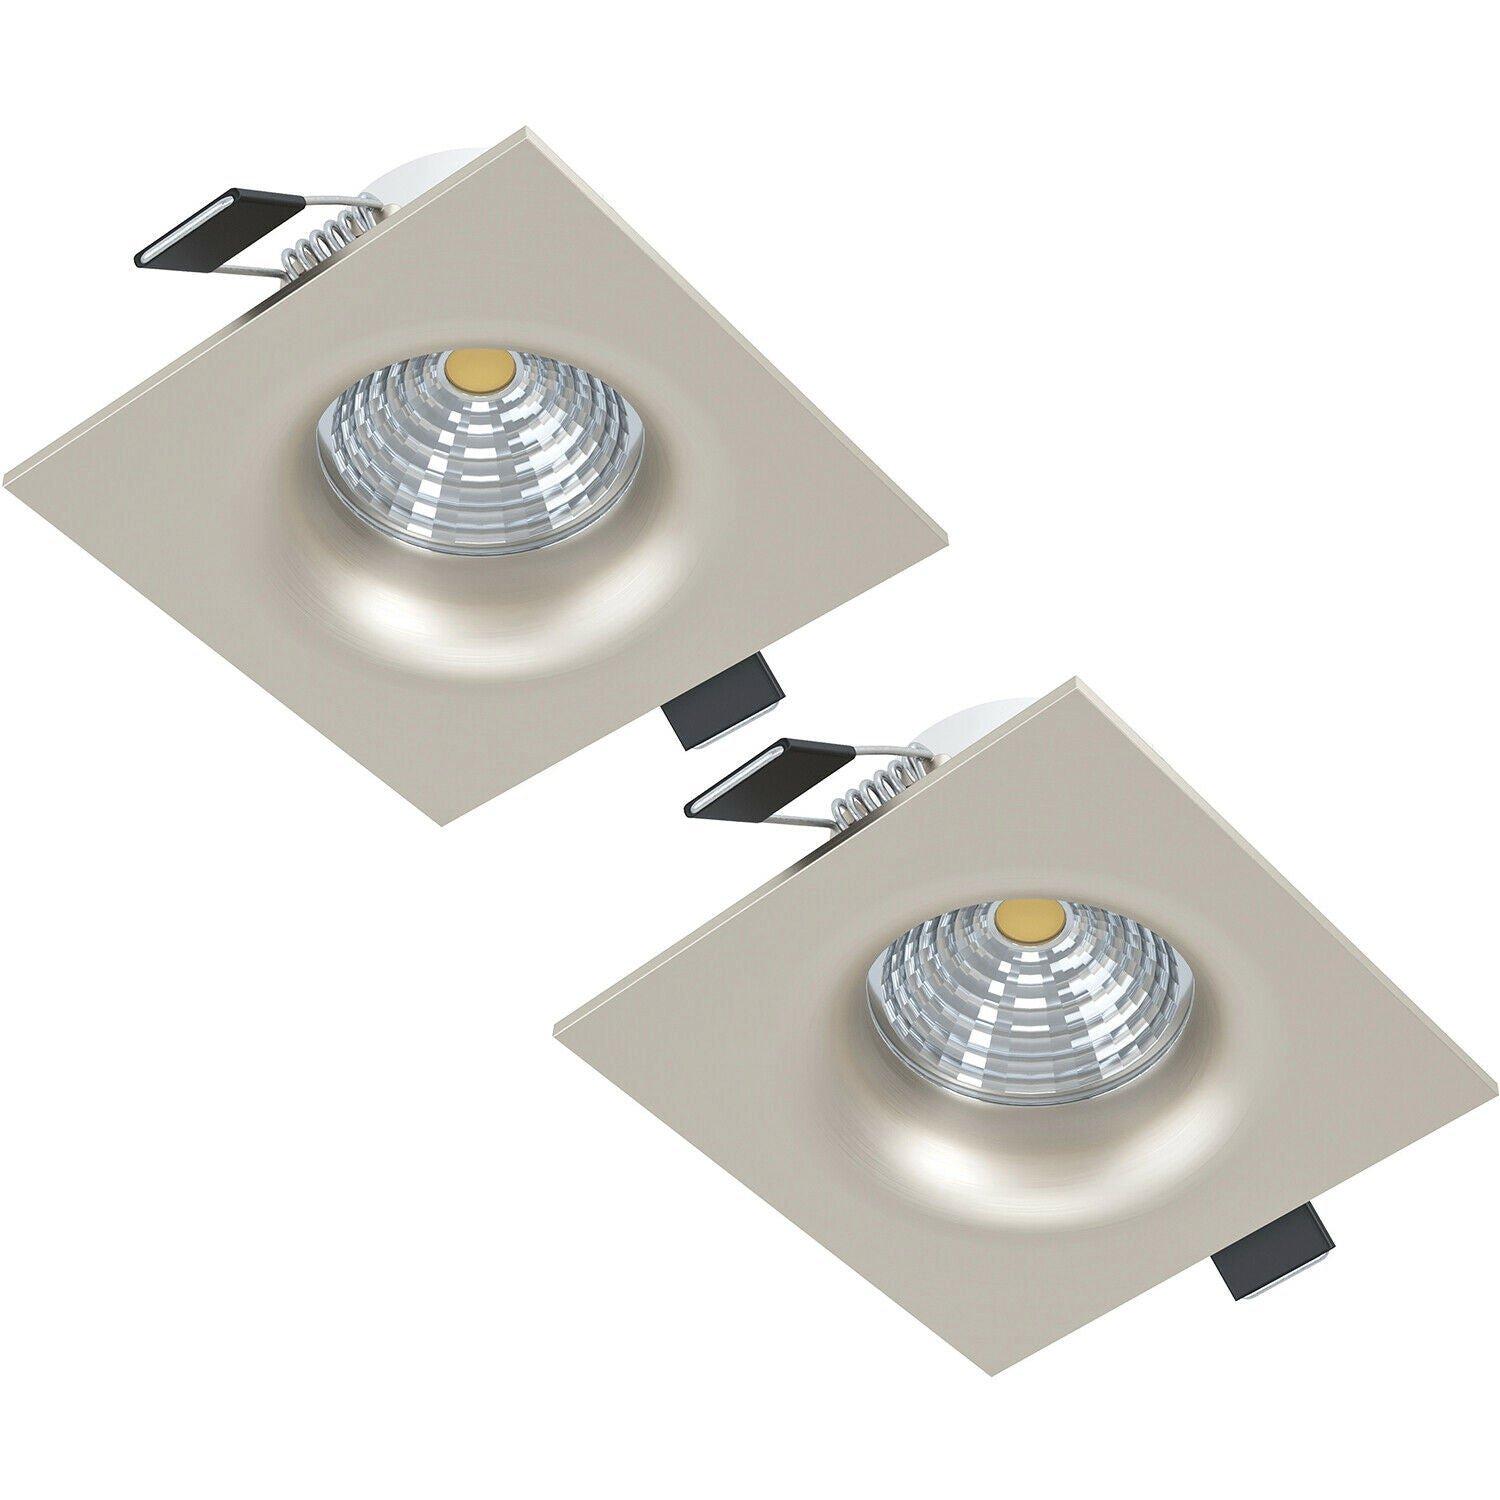 2 PACK Ceiling Flush Square Downlight Satin Nickel Spotlight 6W In Built LED